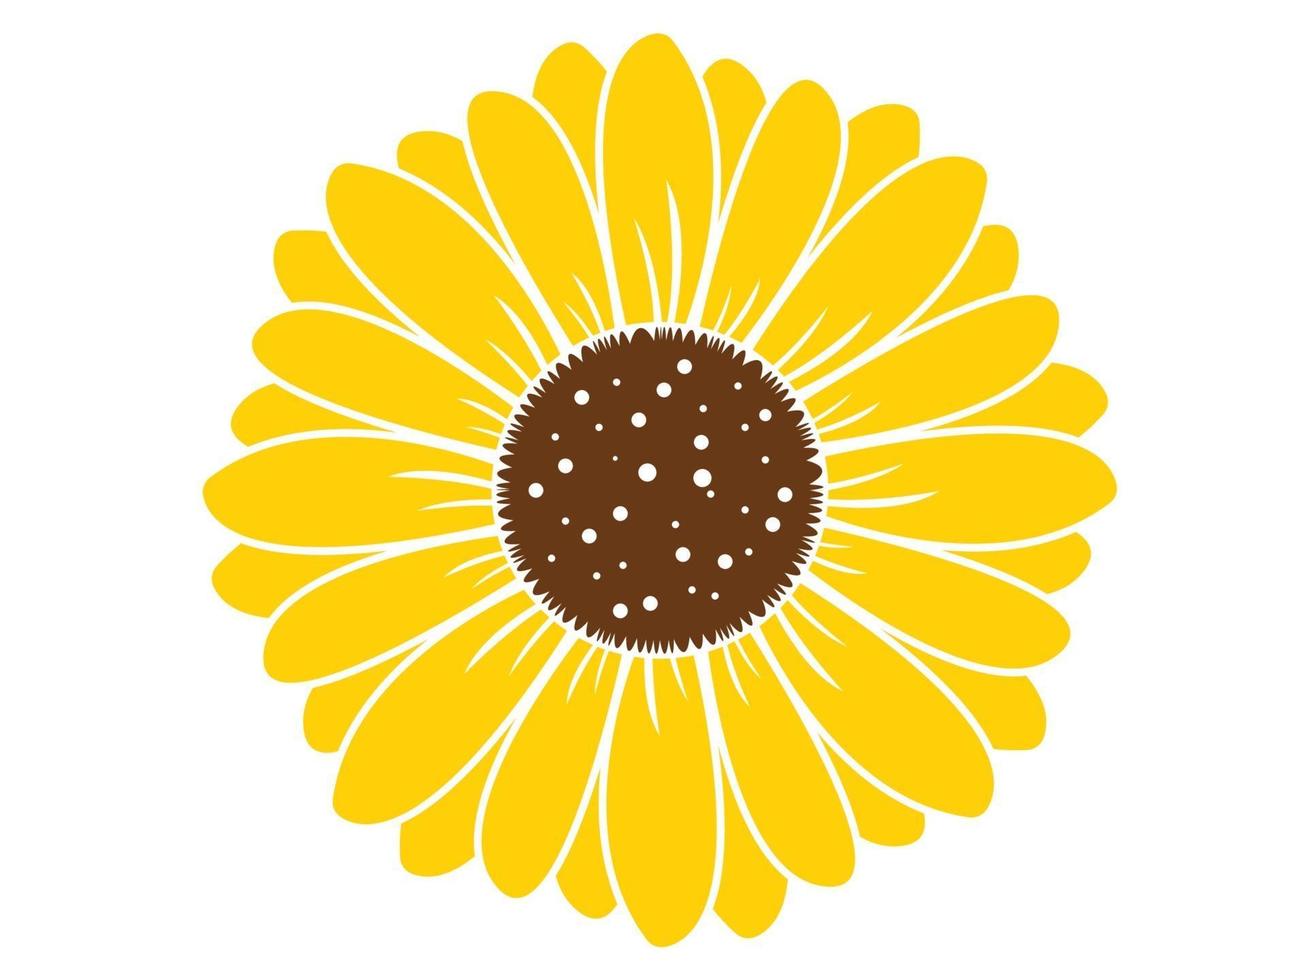 Sunflower isolated on white background. Boho tribal print.Flat design illustration vector